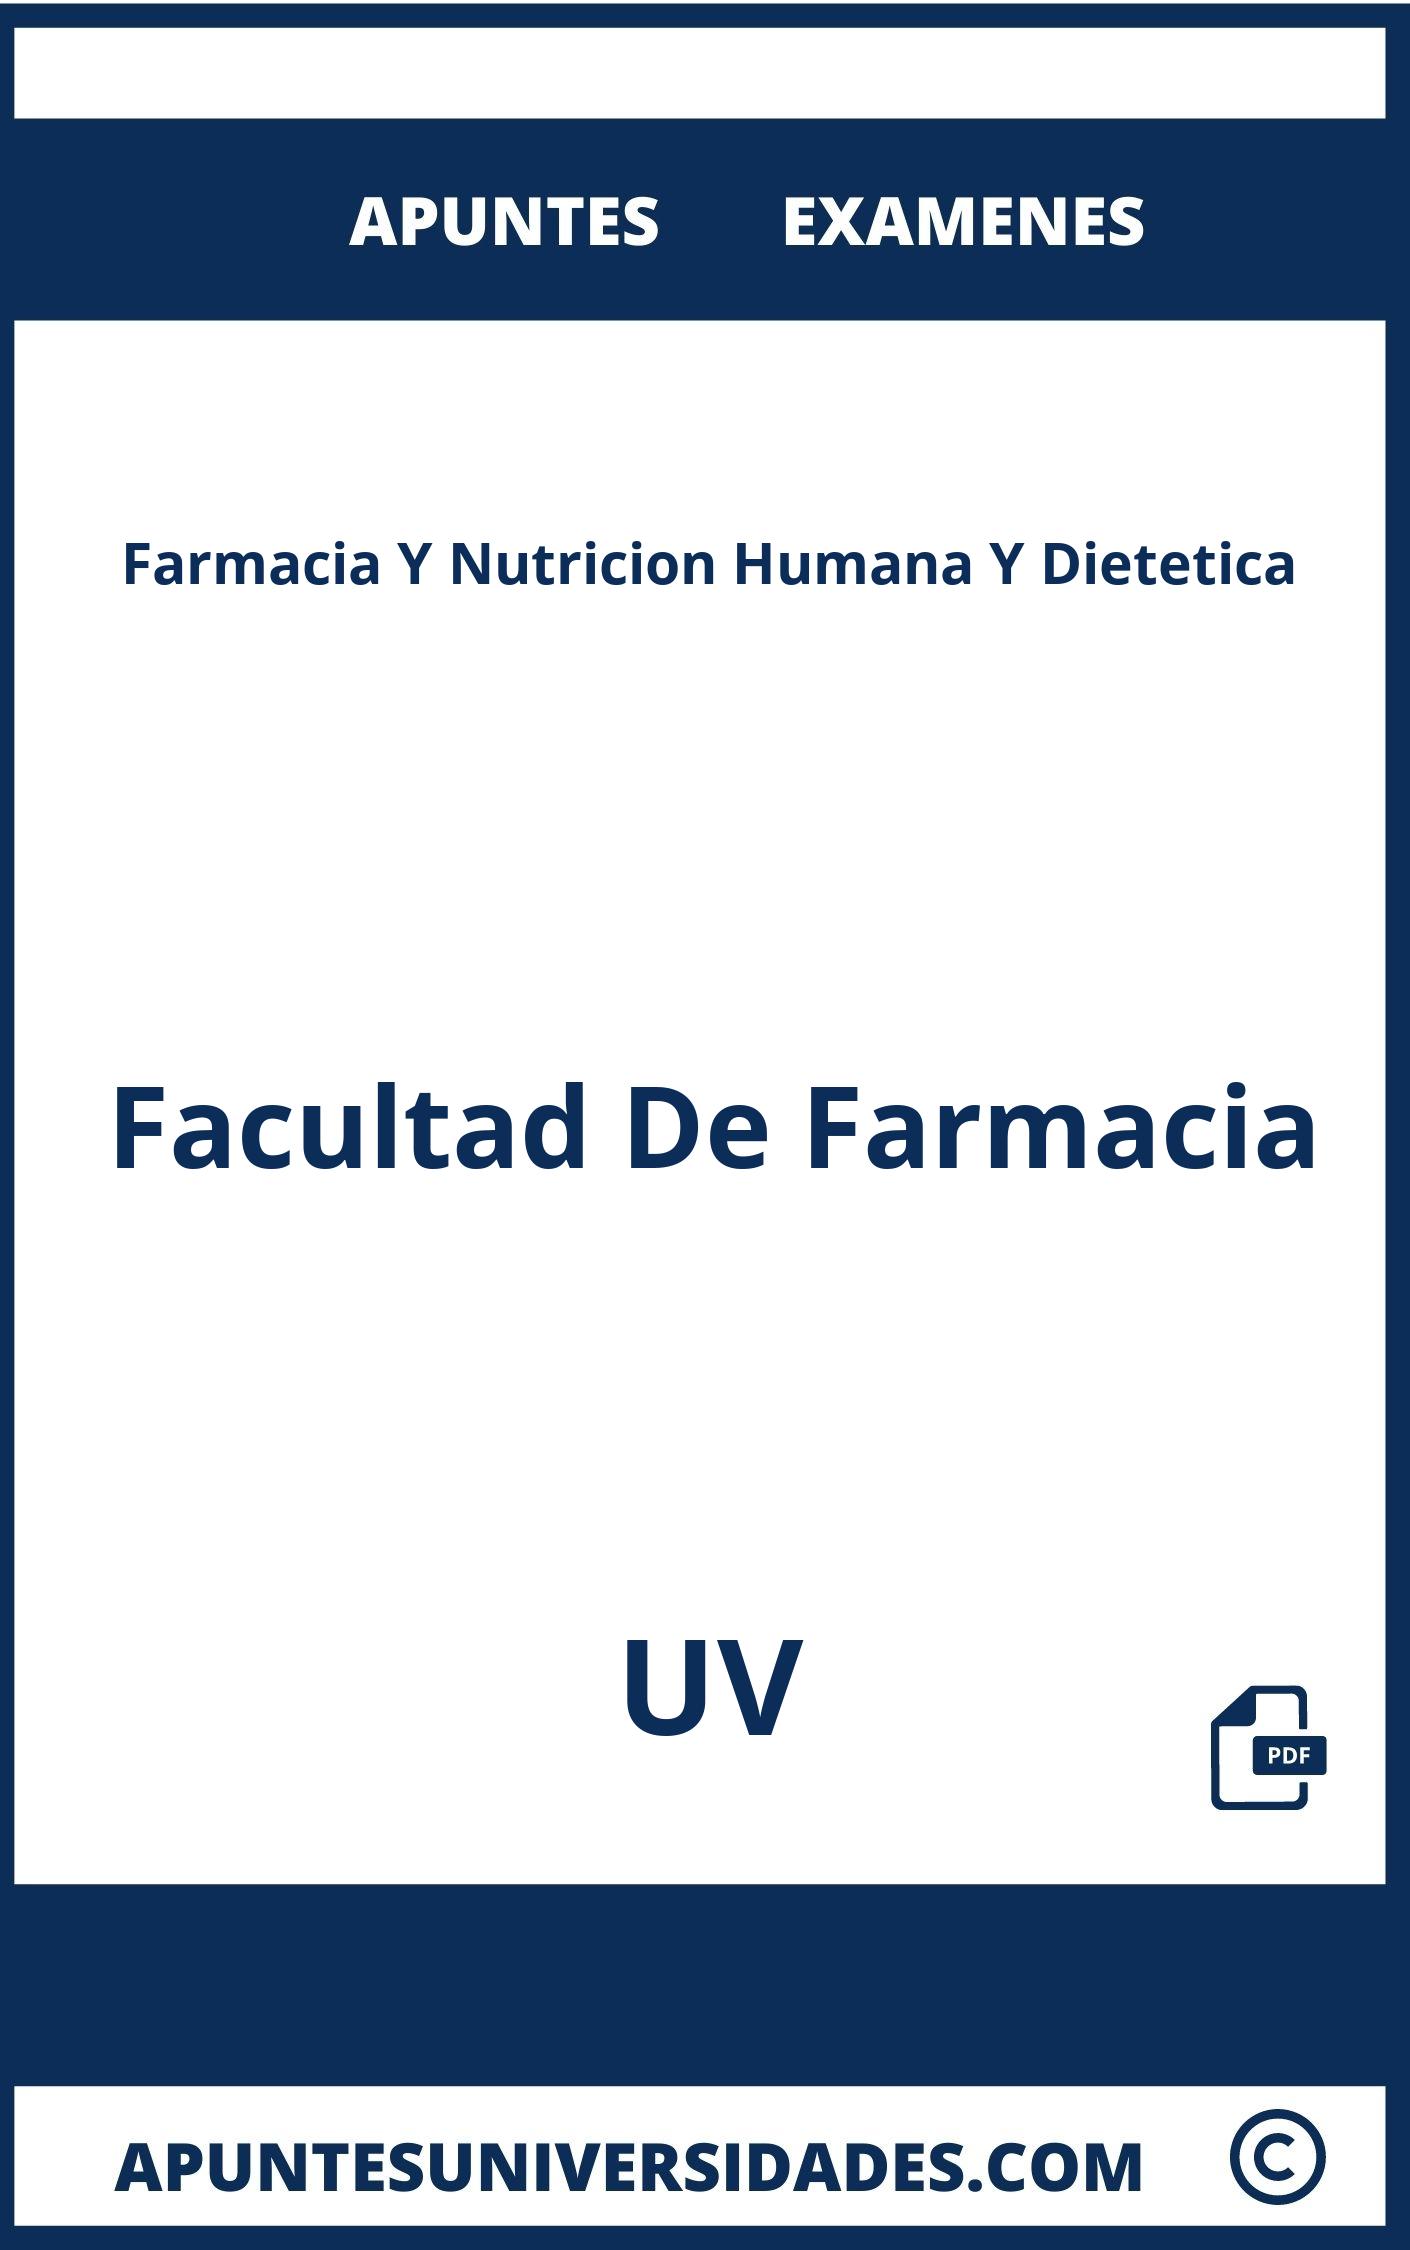 Apuntes y Examenes de Farmacia Y Nutricion Humana Y Dietetica UV